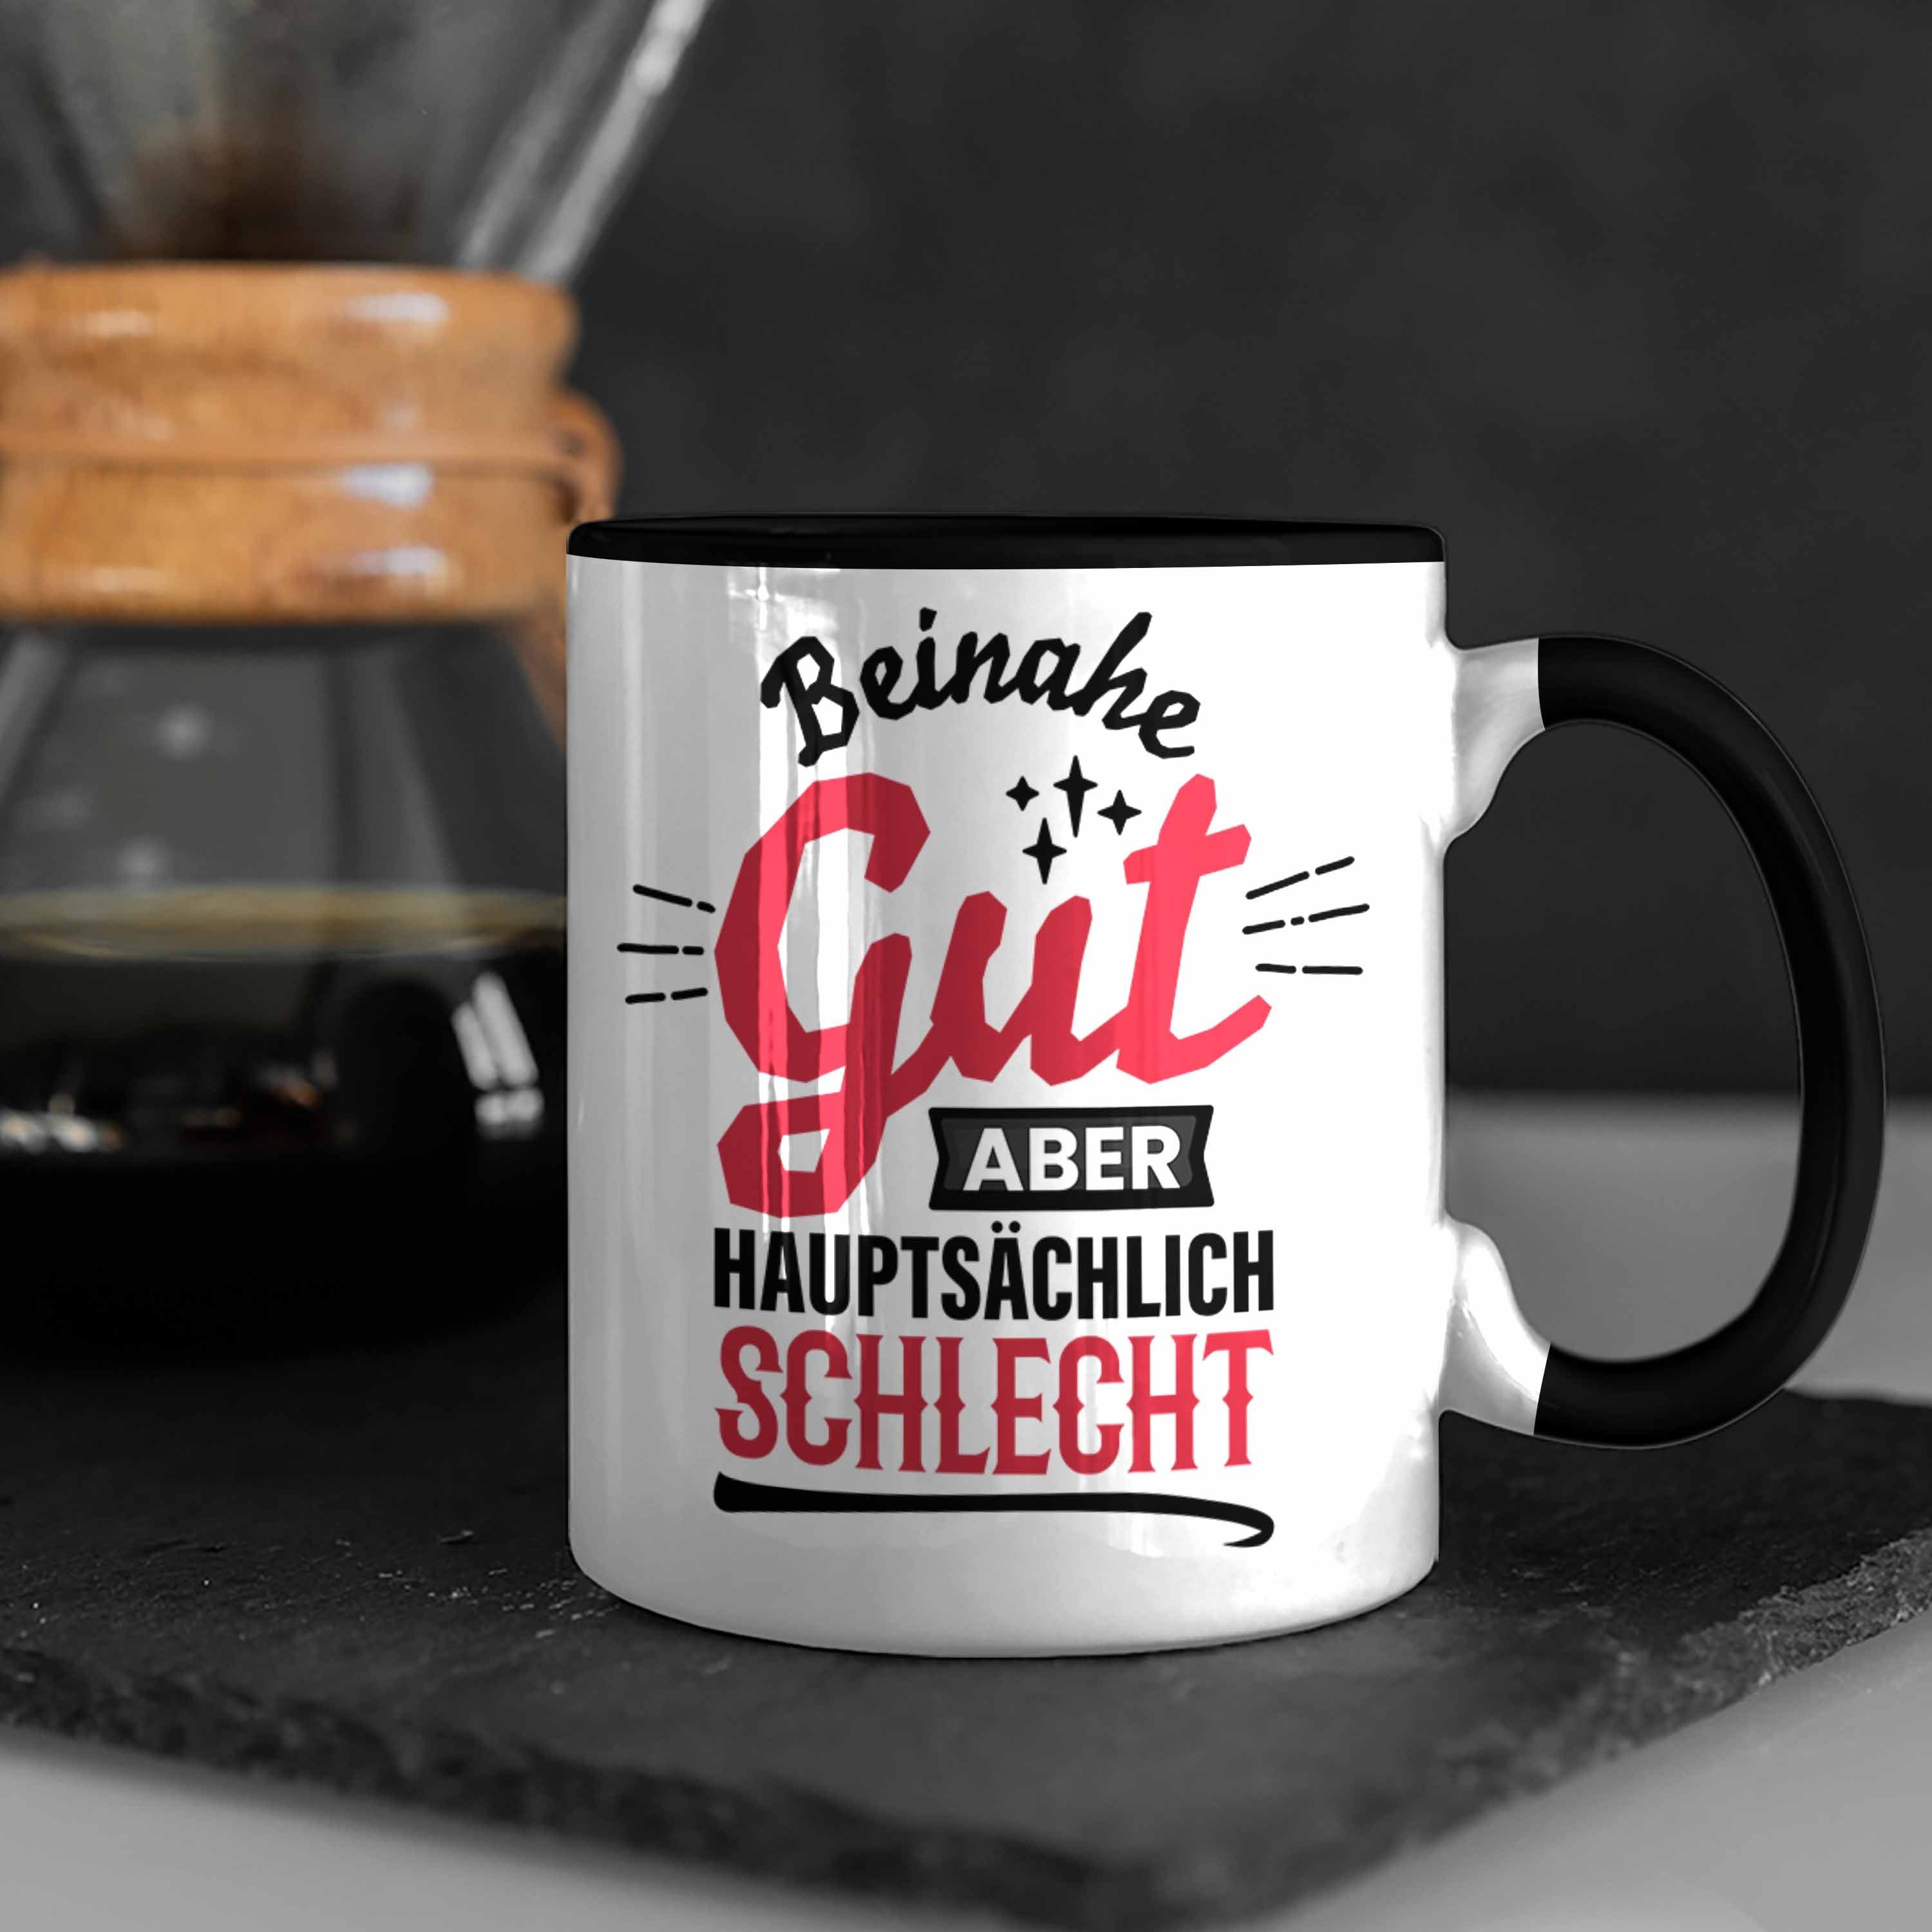 Trendation Tasse Lustiger Spruch Kaffee-Becher Sch Schwarz Hauptsächlich Tasse Gut Beinahe Aber